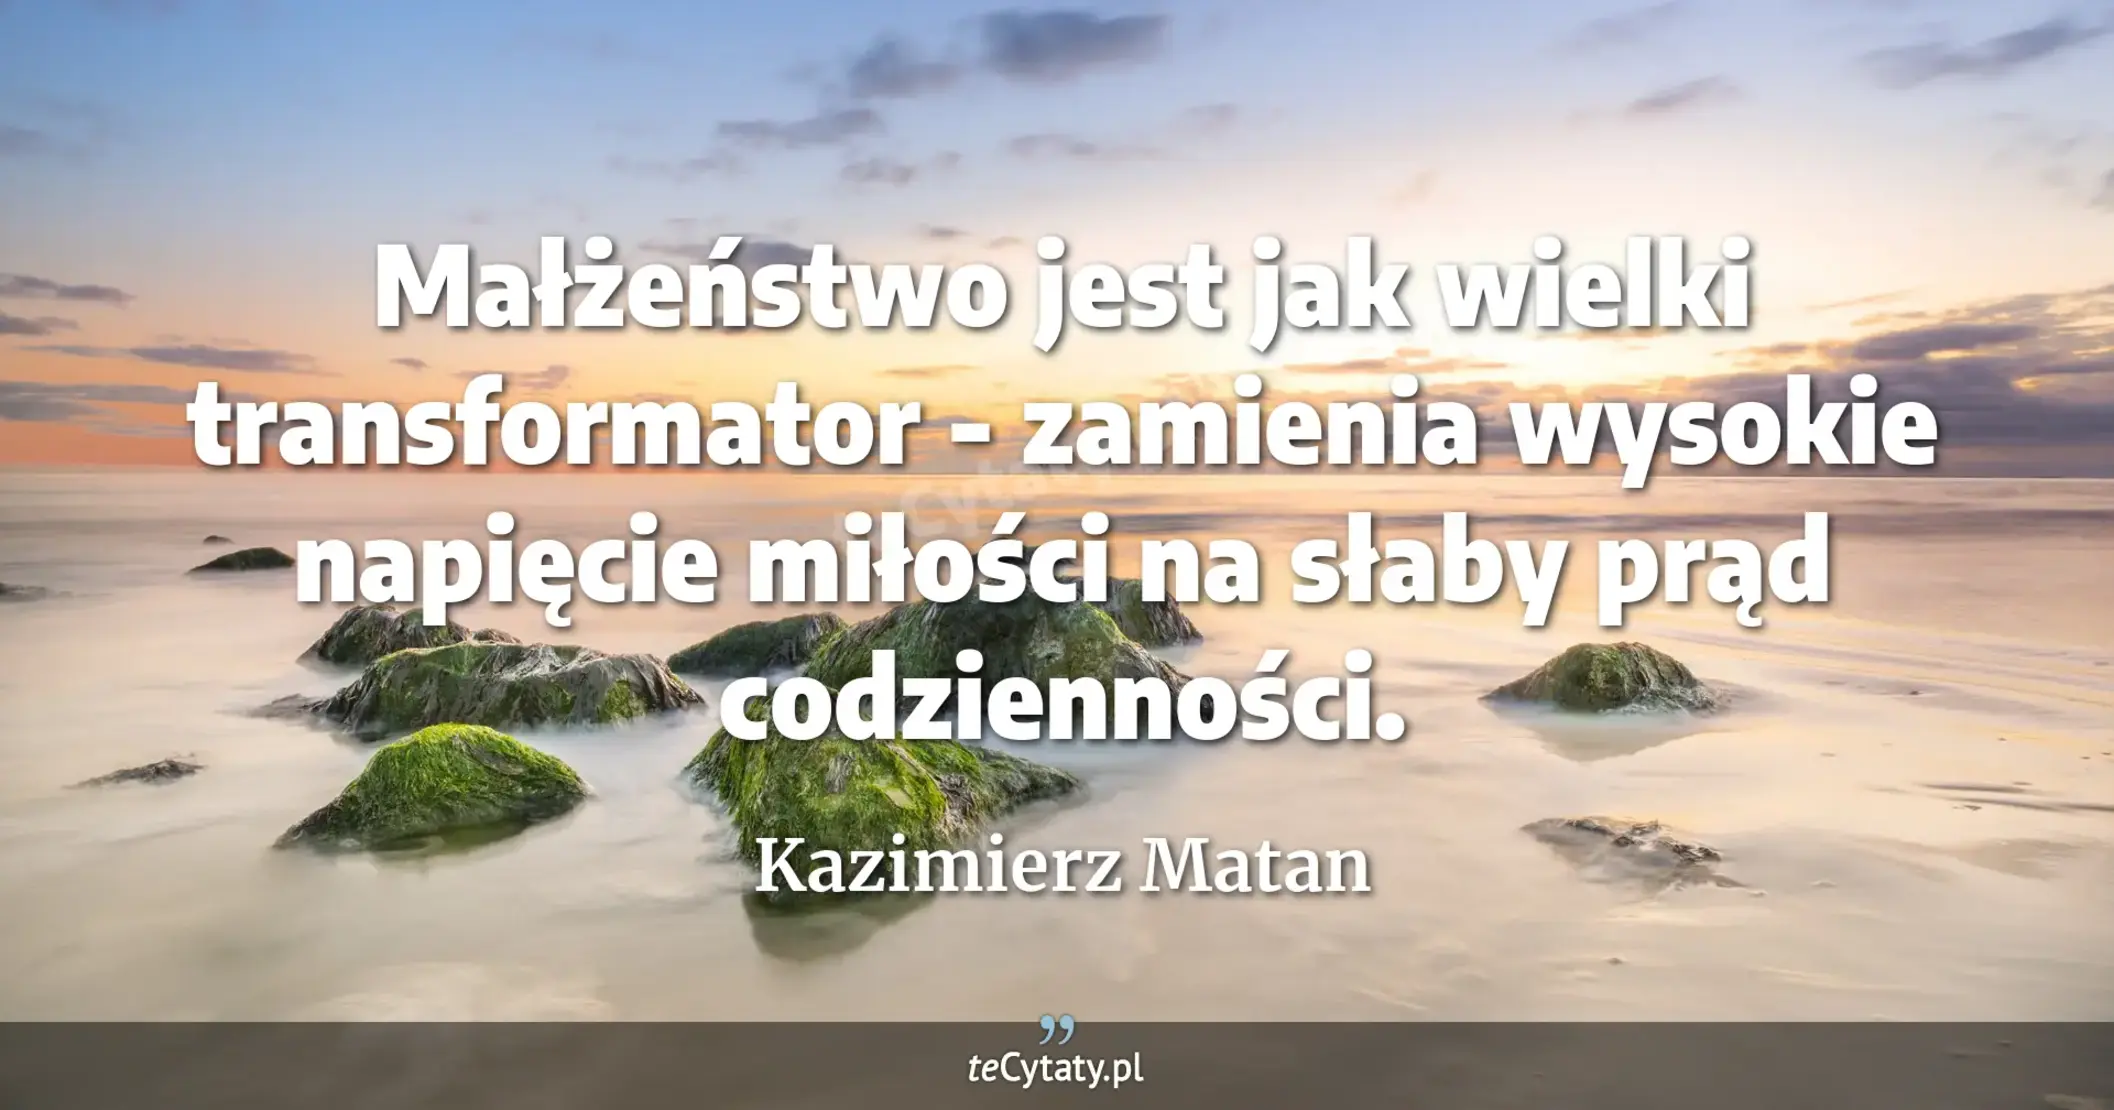 Małżeństwo jest jak wielki transformator - zamienia wysokie napięcie miłości na słaby prąd codzienności. - Kazimierz Matan